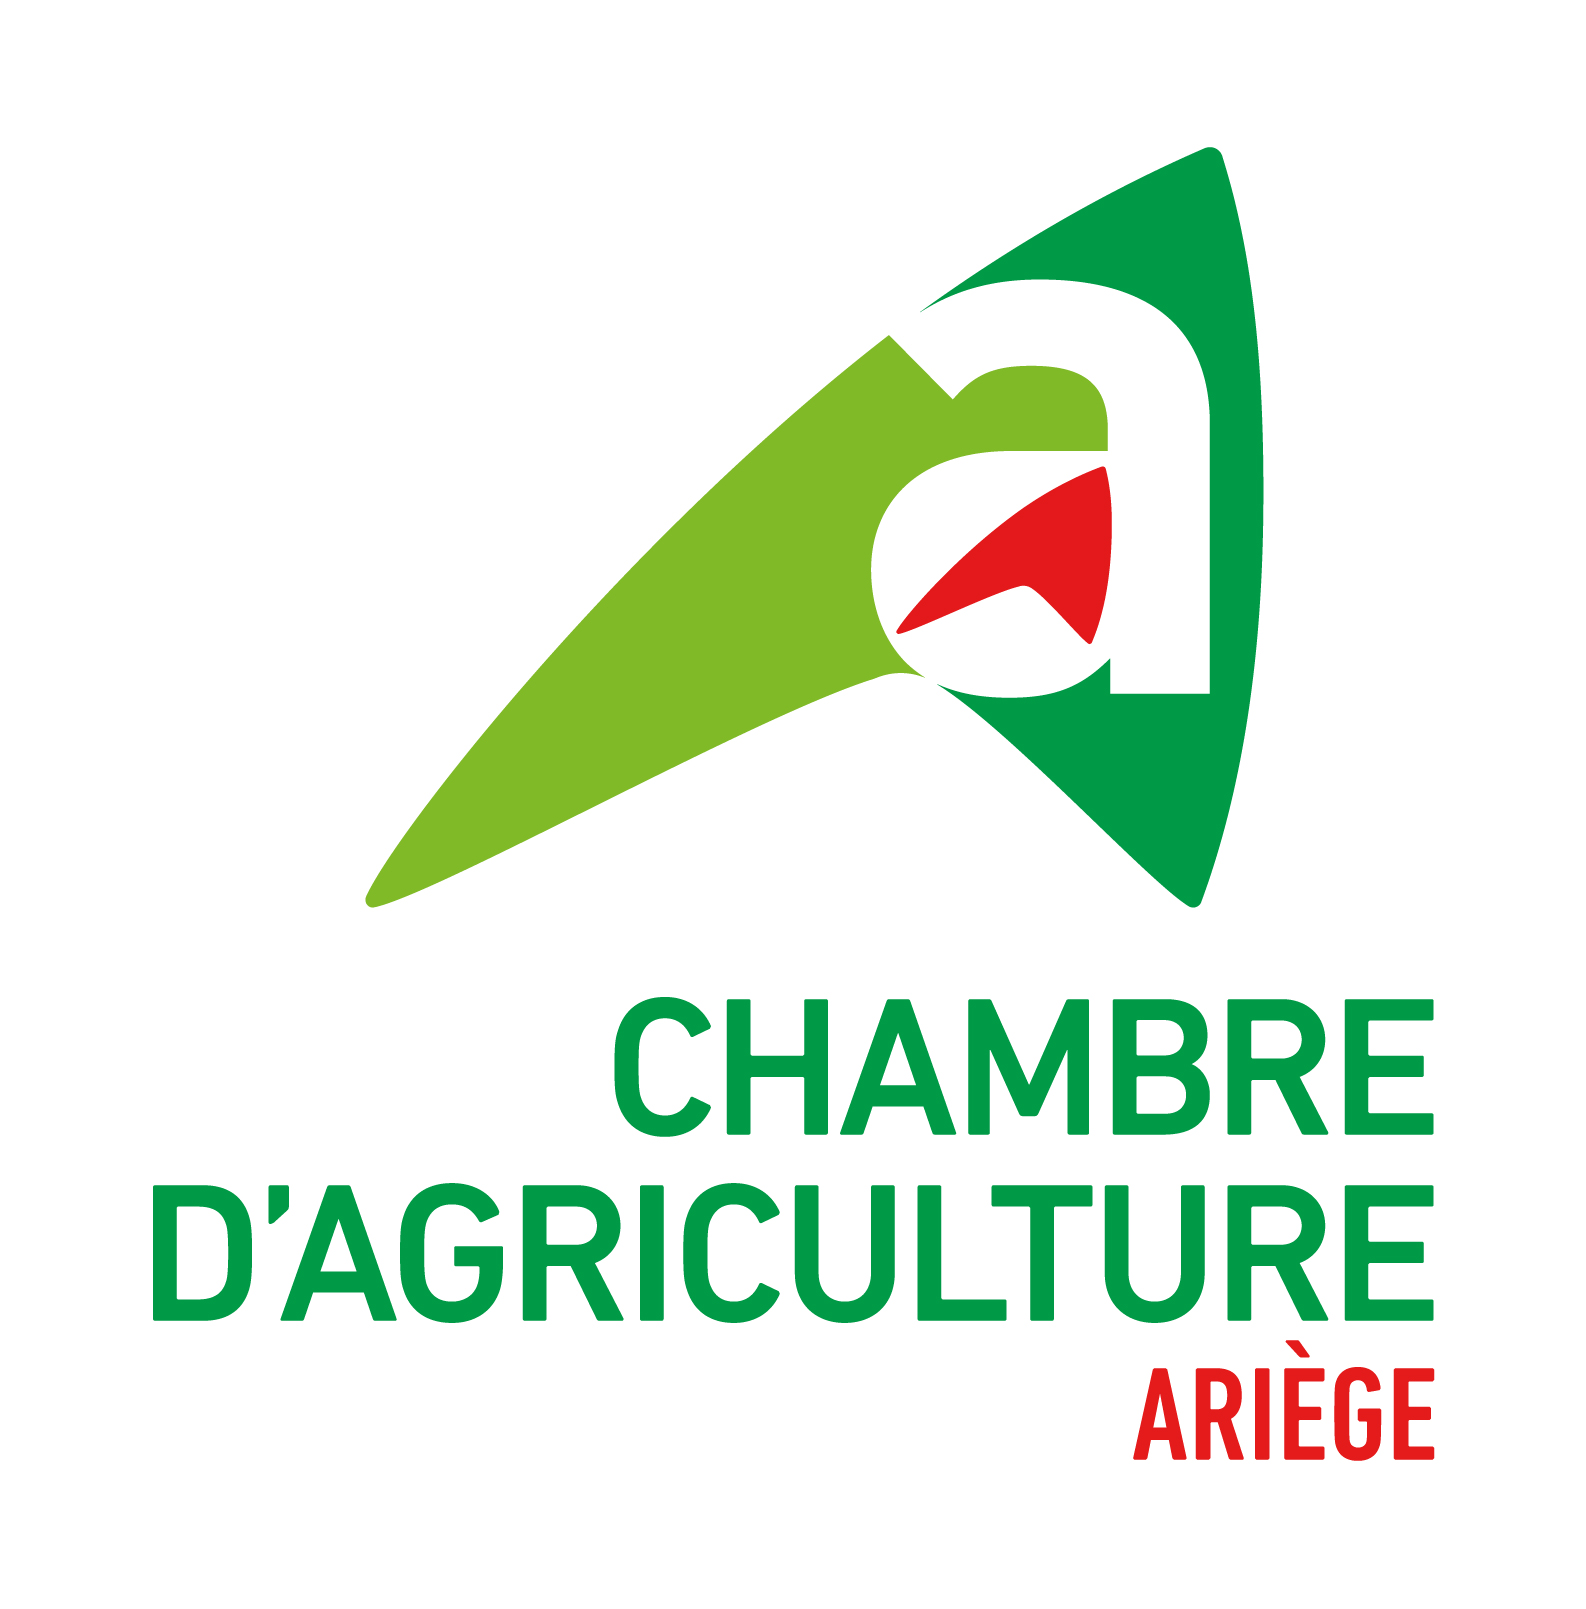 Chambre d'agriculture de l'Ariege, retour à la page d'accueil